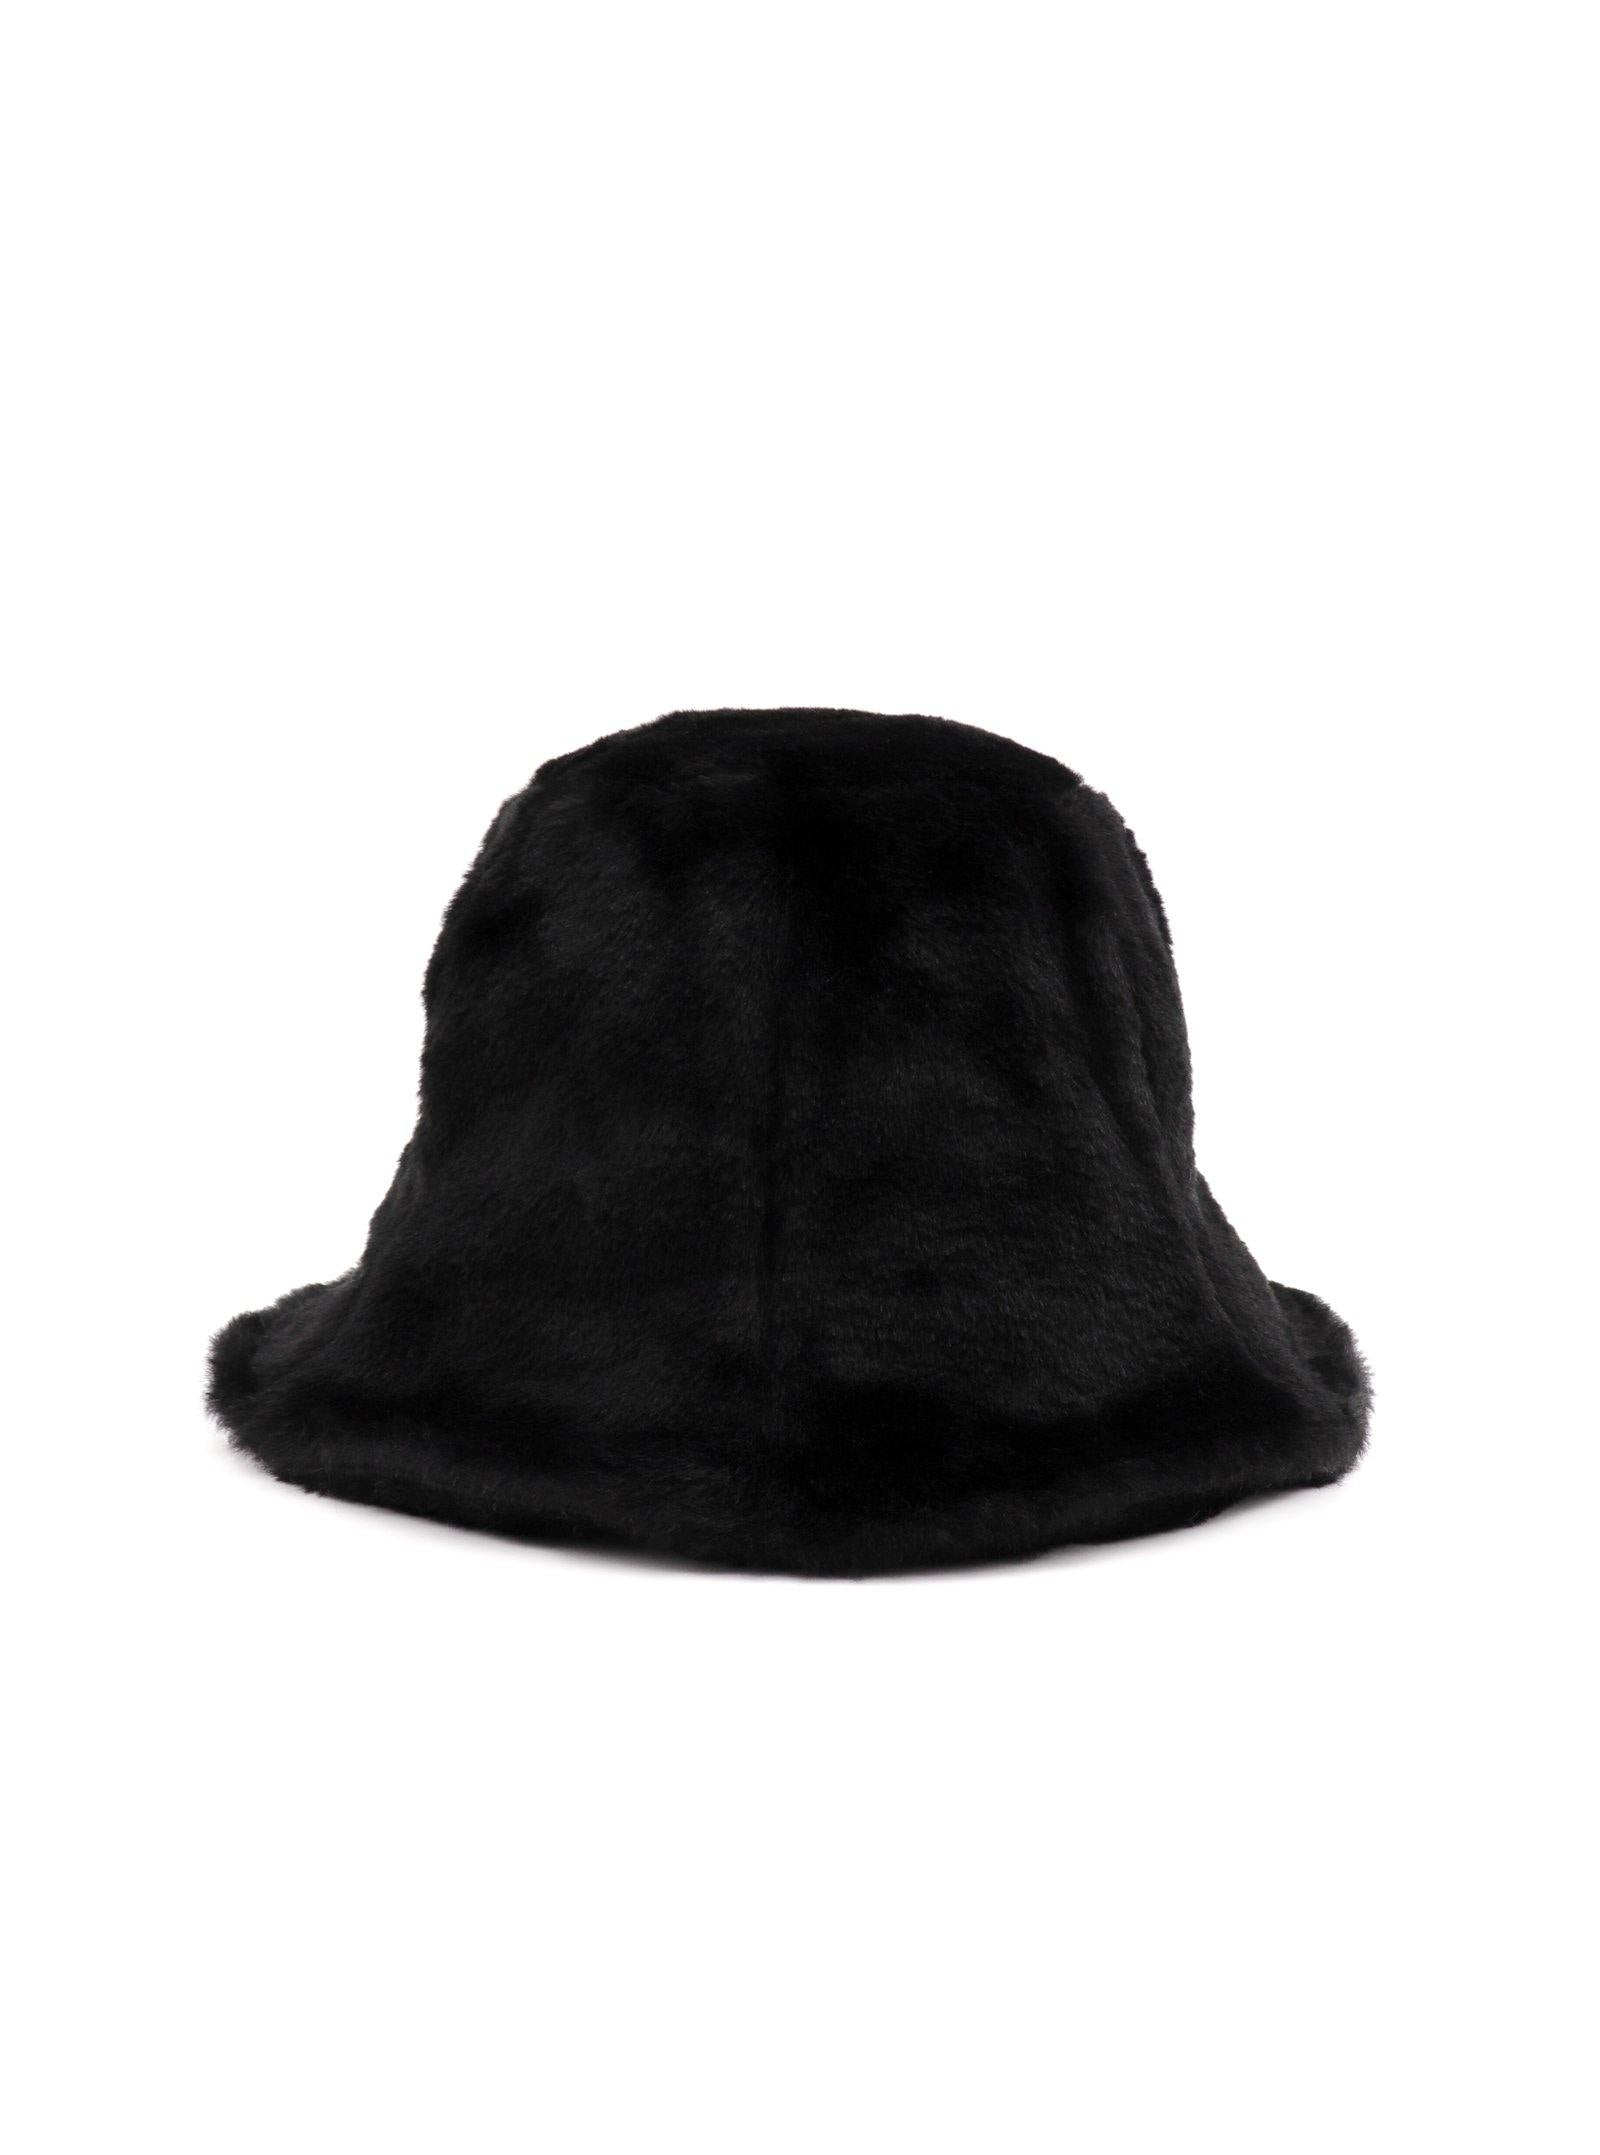 HACINTHIA BUCKET HAT - Simplique Mode